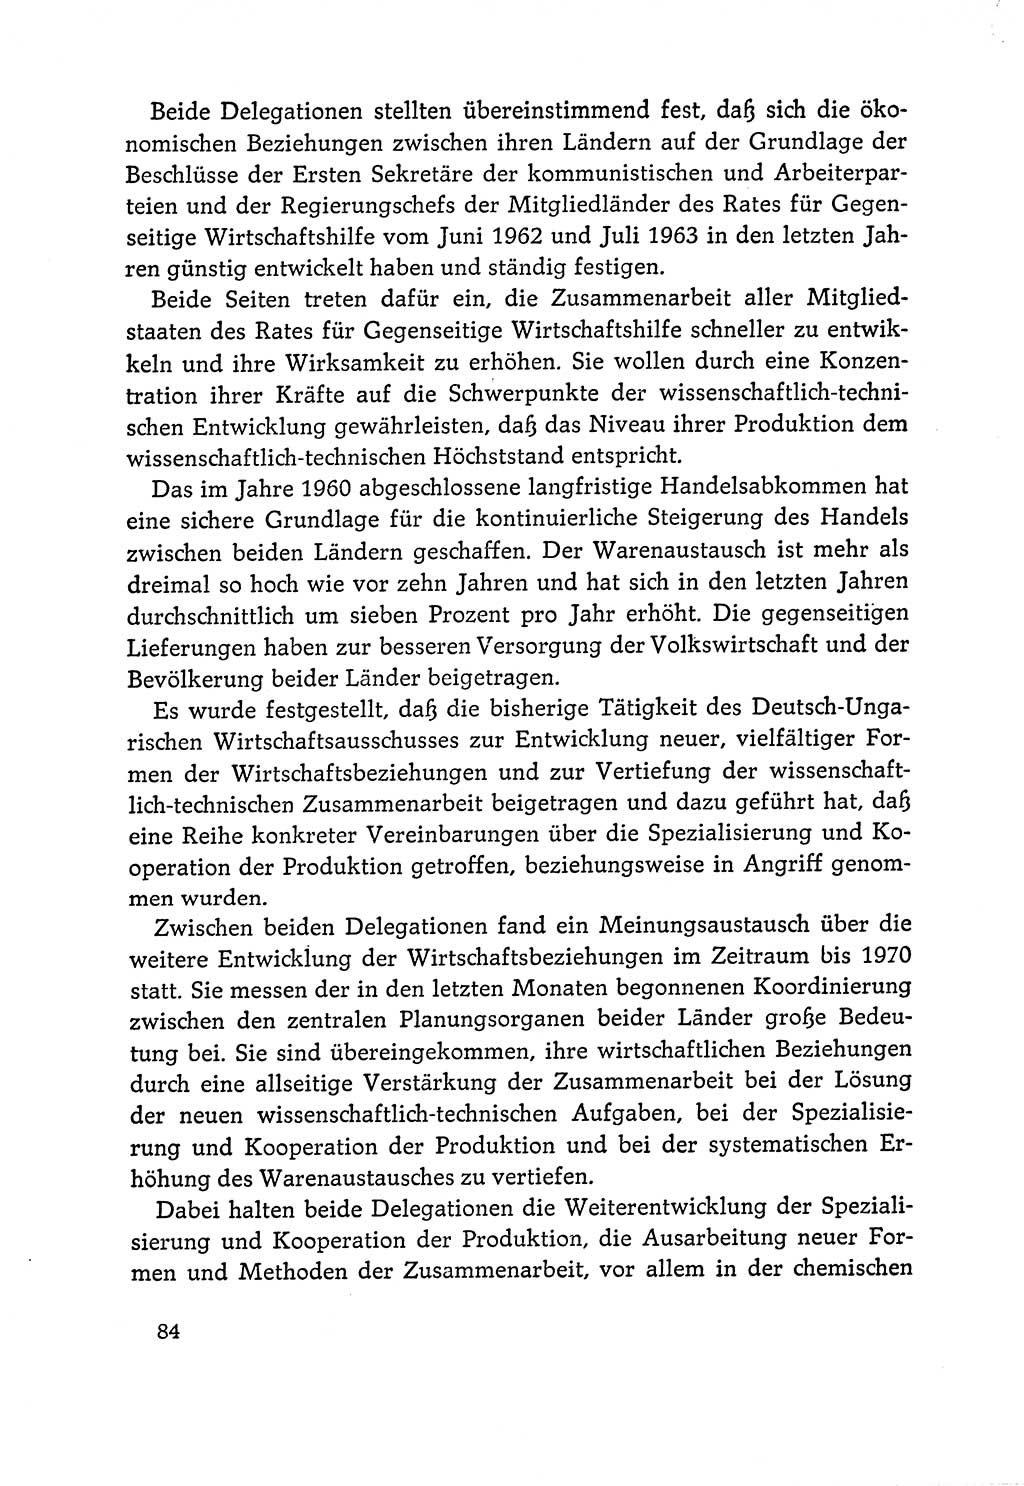 Dokumente der Sozialistischen Einheitspartei Deutschlands (SED) [Deutsche Demokratische Republik (DDR)] 1964-1965, Seite 84 (Dok. SED DDR 1964-1965, S. 84)